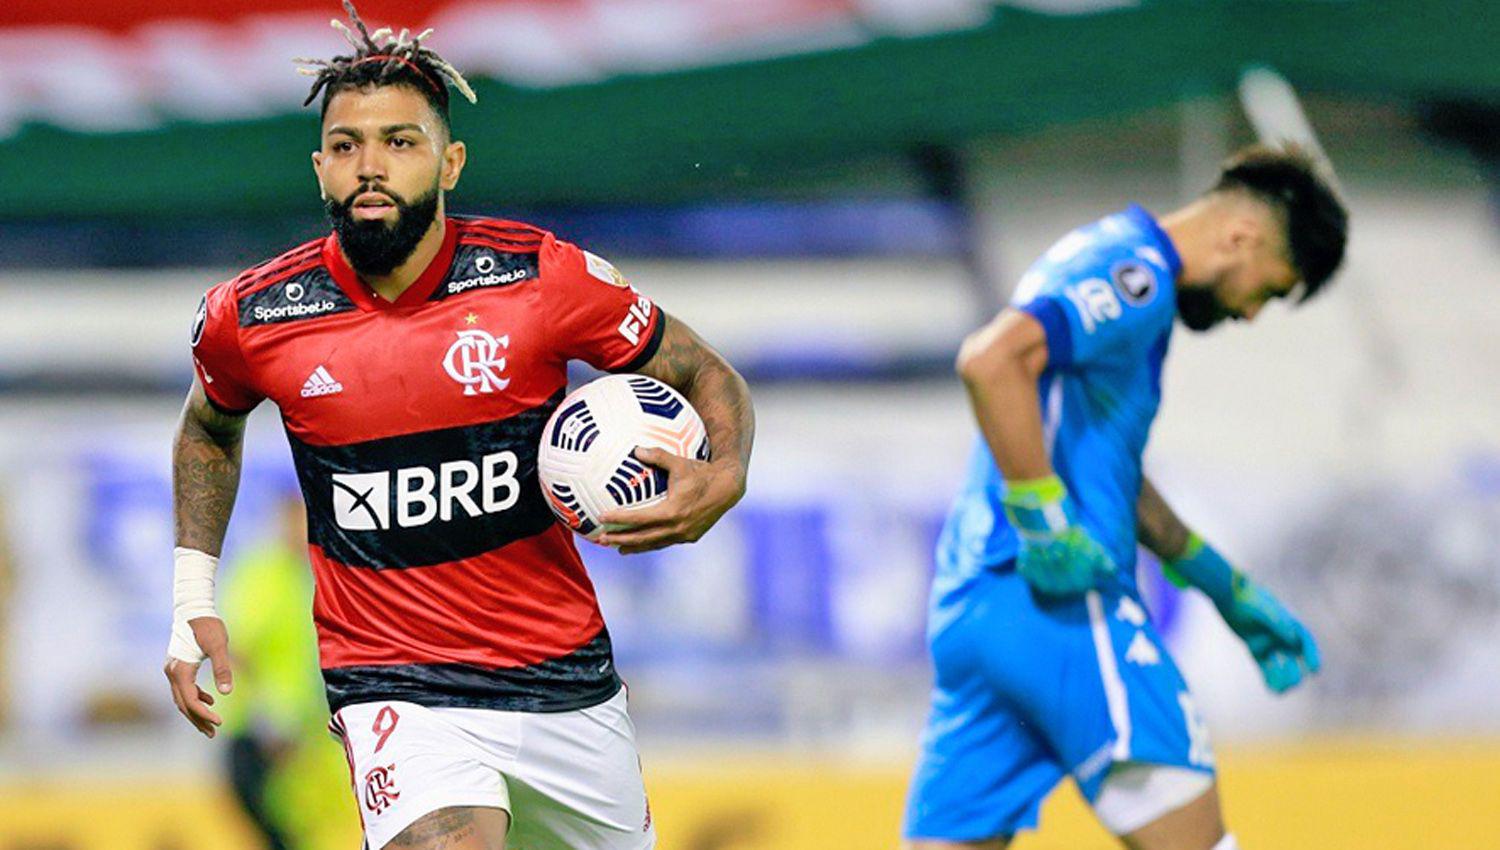 Veacutelez ganaba 2 a 1 pero Flamengo lo dio vuelta en Liniers